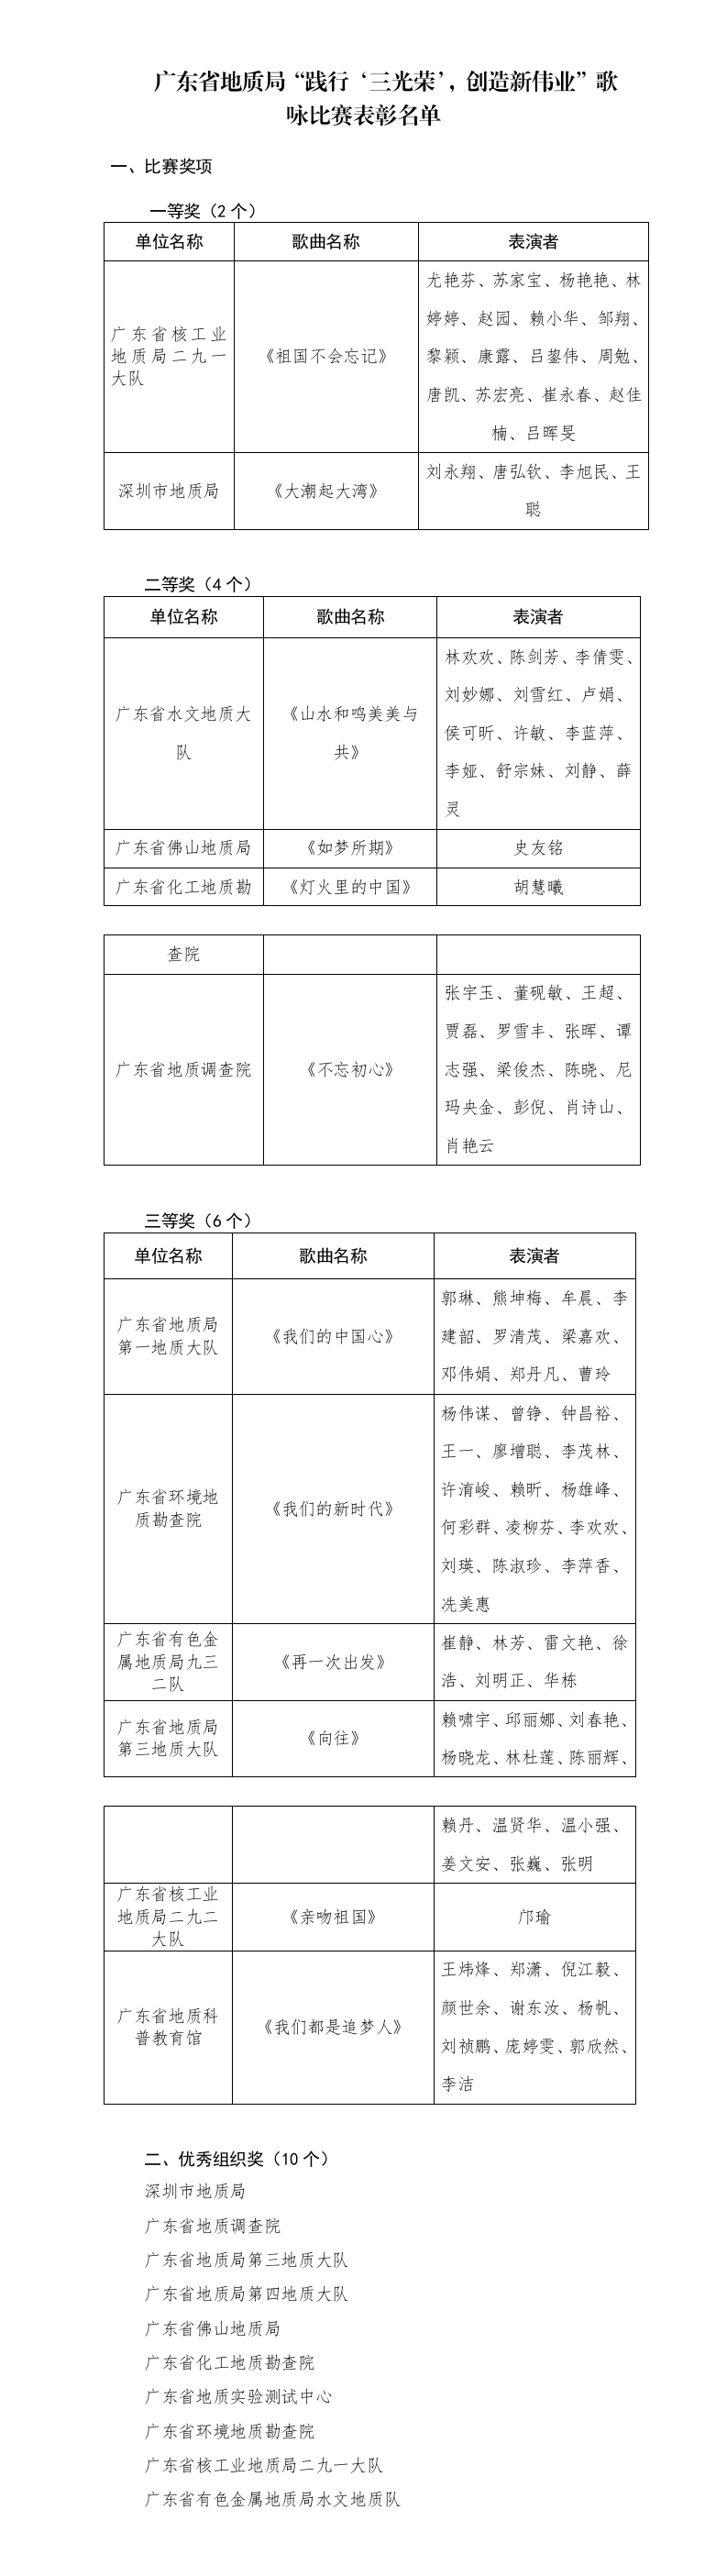 YW省地质局红歌大赛唱响“践行‘三光荣’，创造新伟业”.png